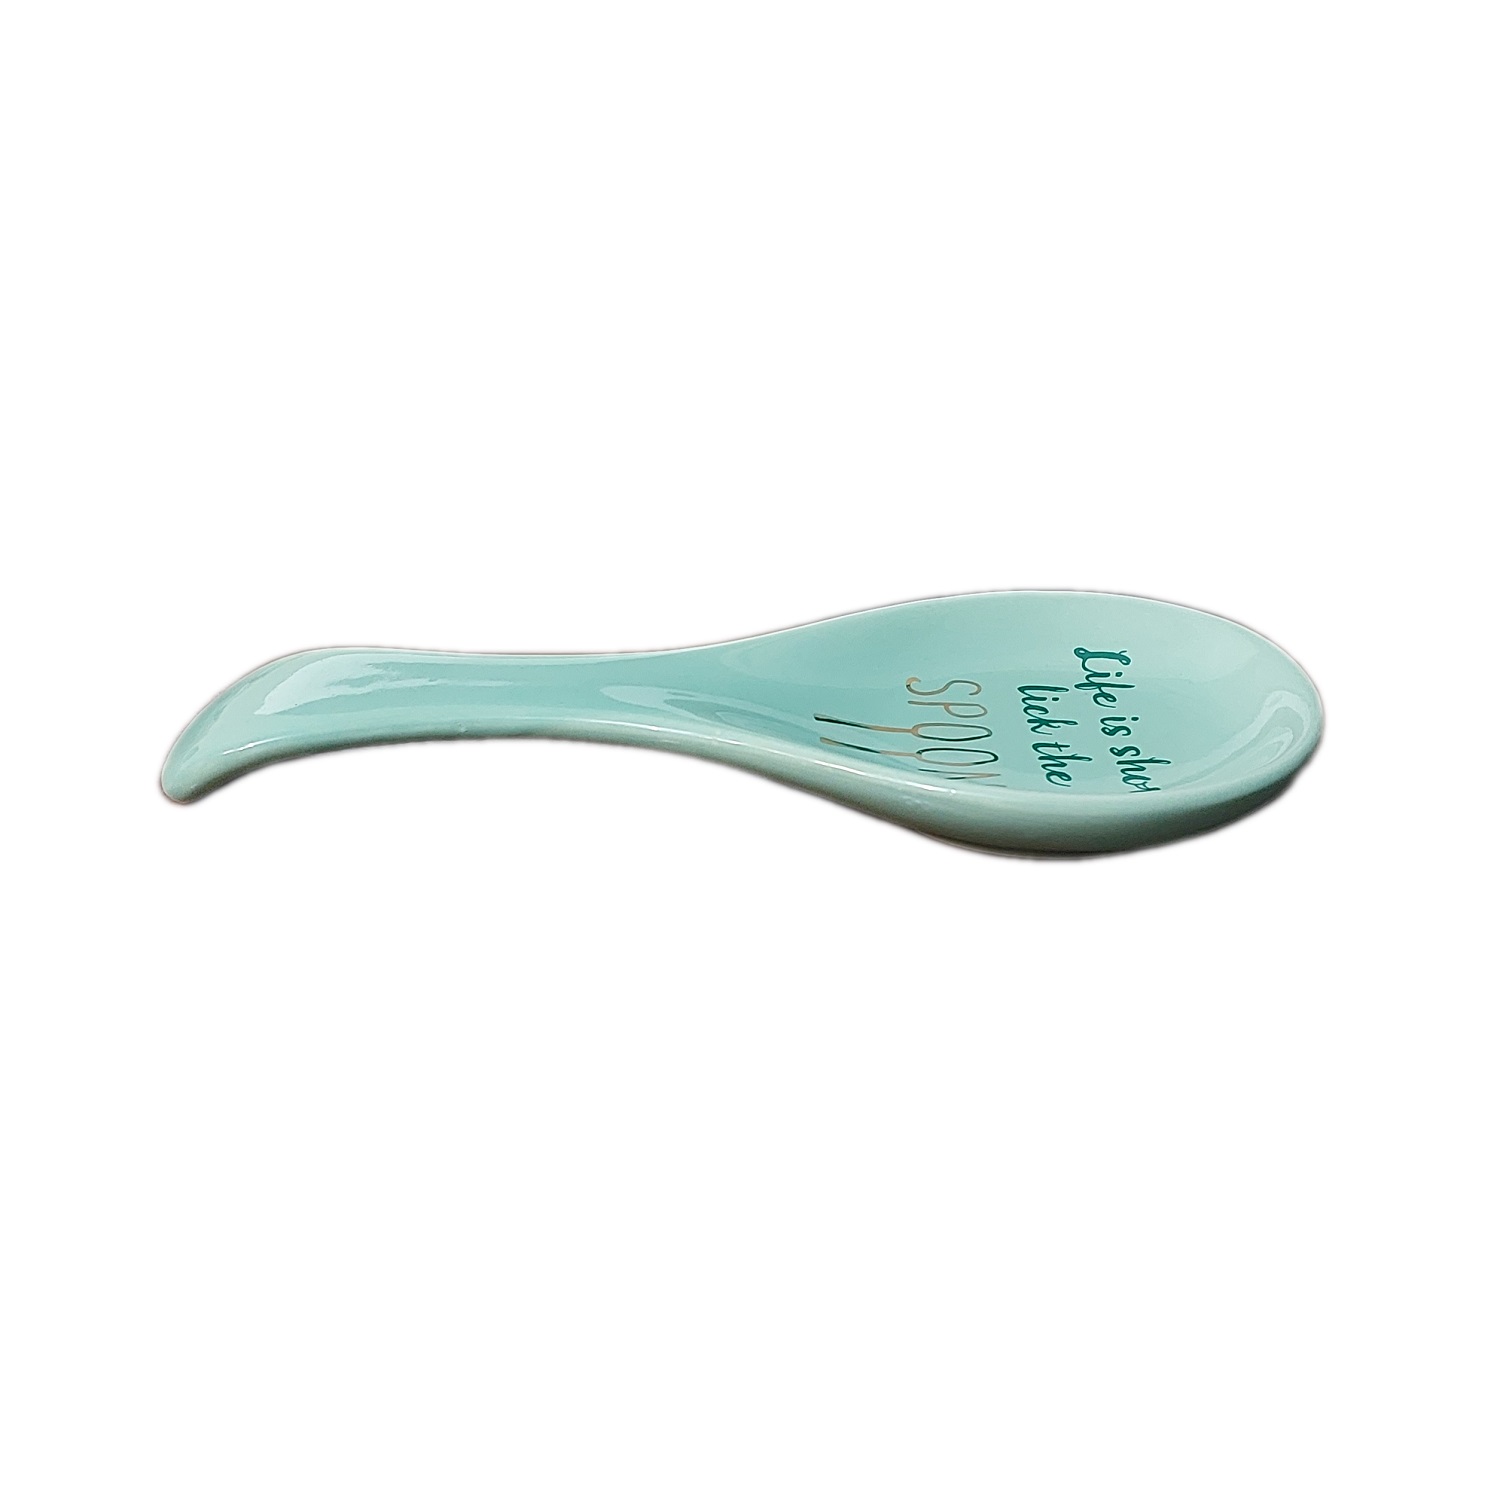 زیر قاشقی مدل سرامیکی طرح spoon